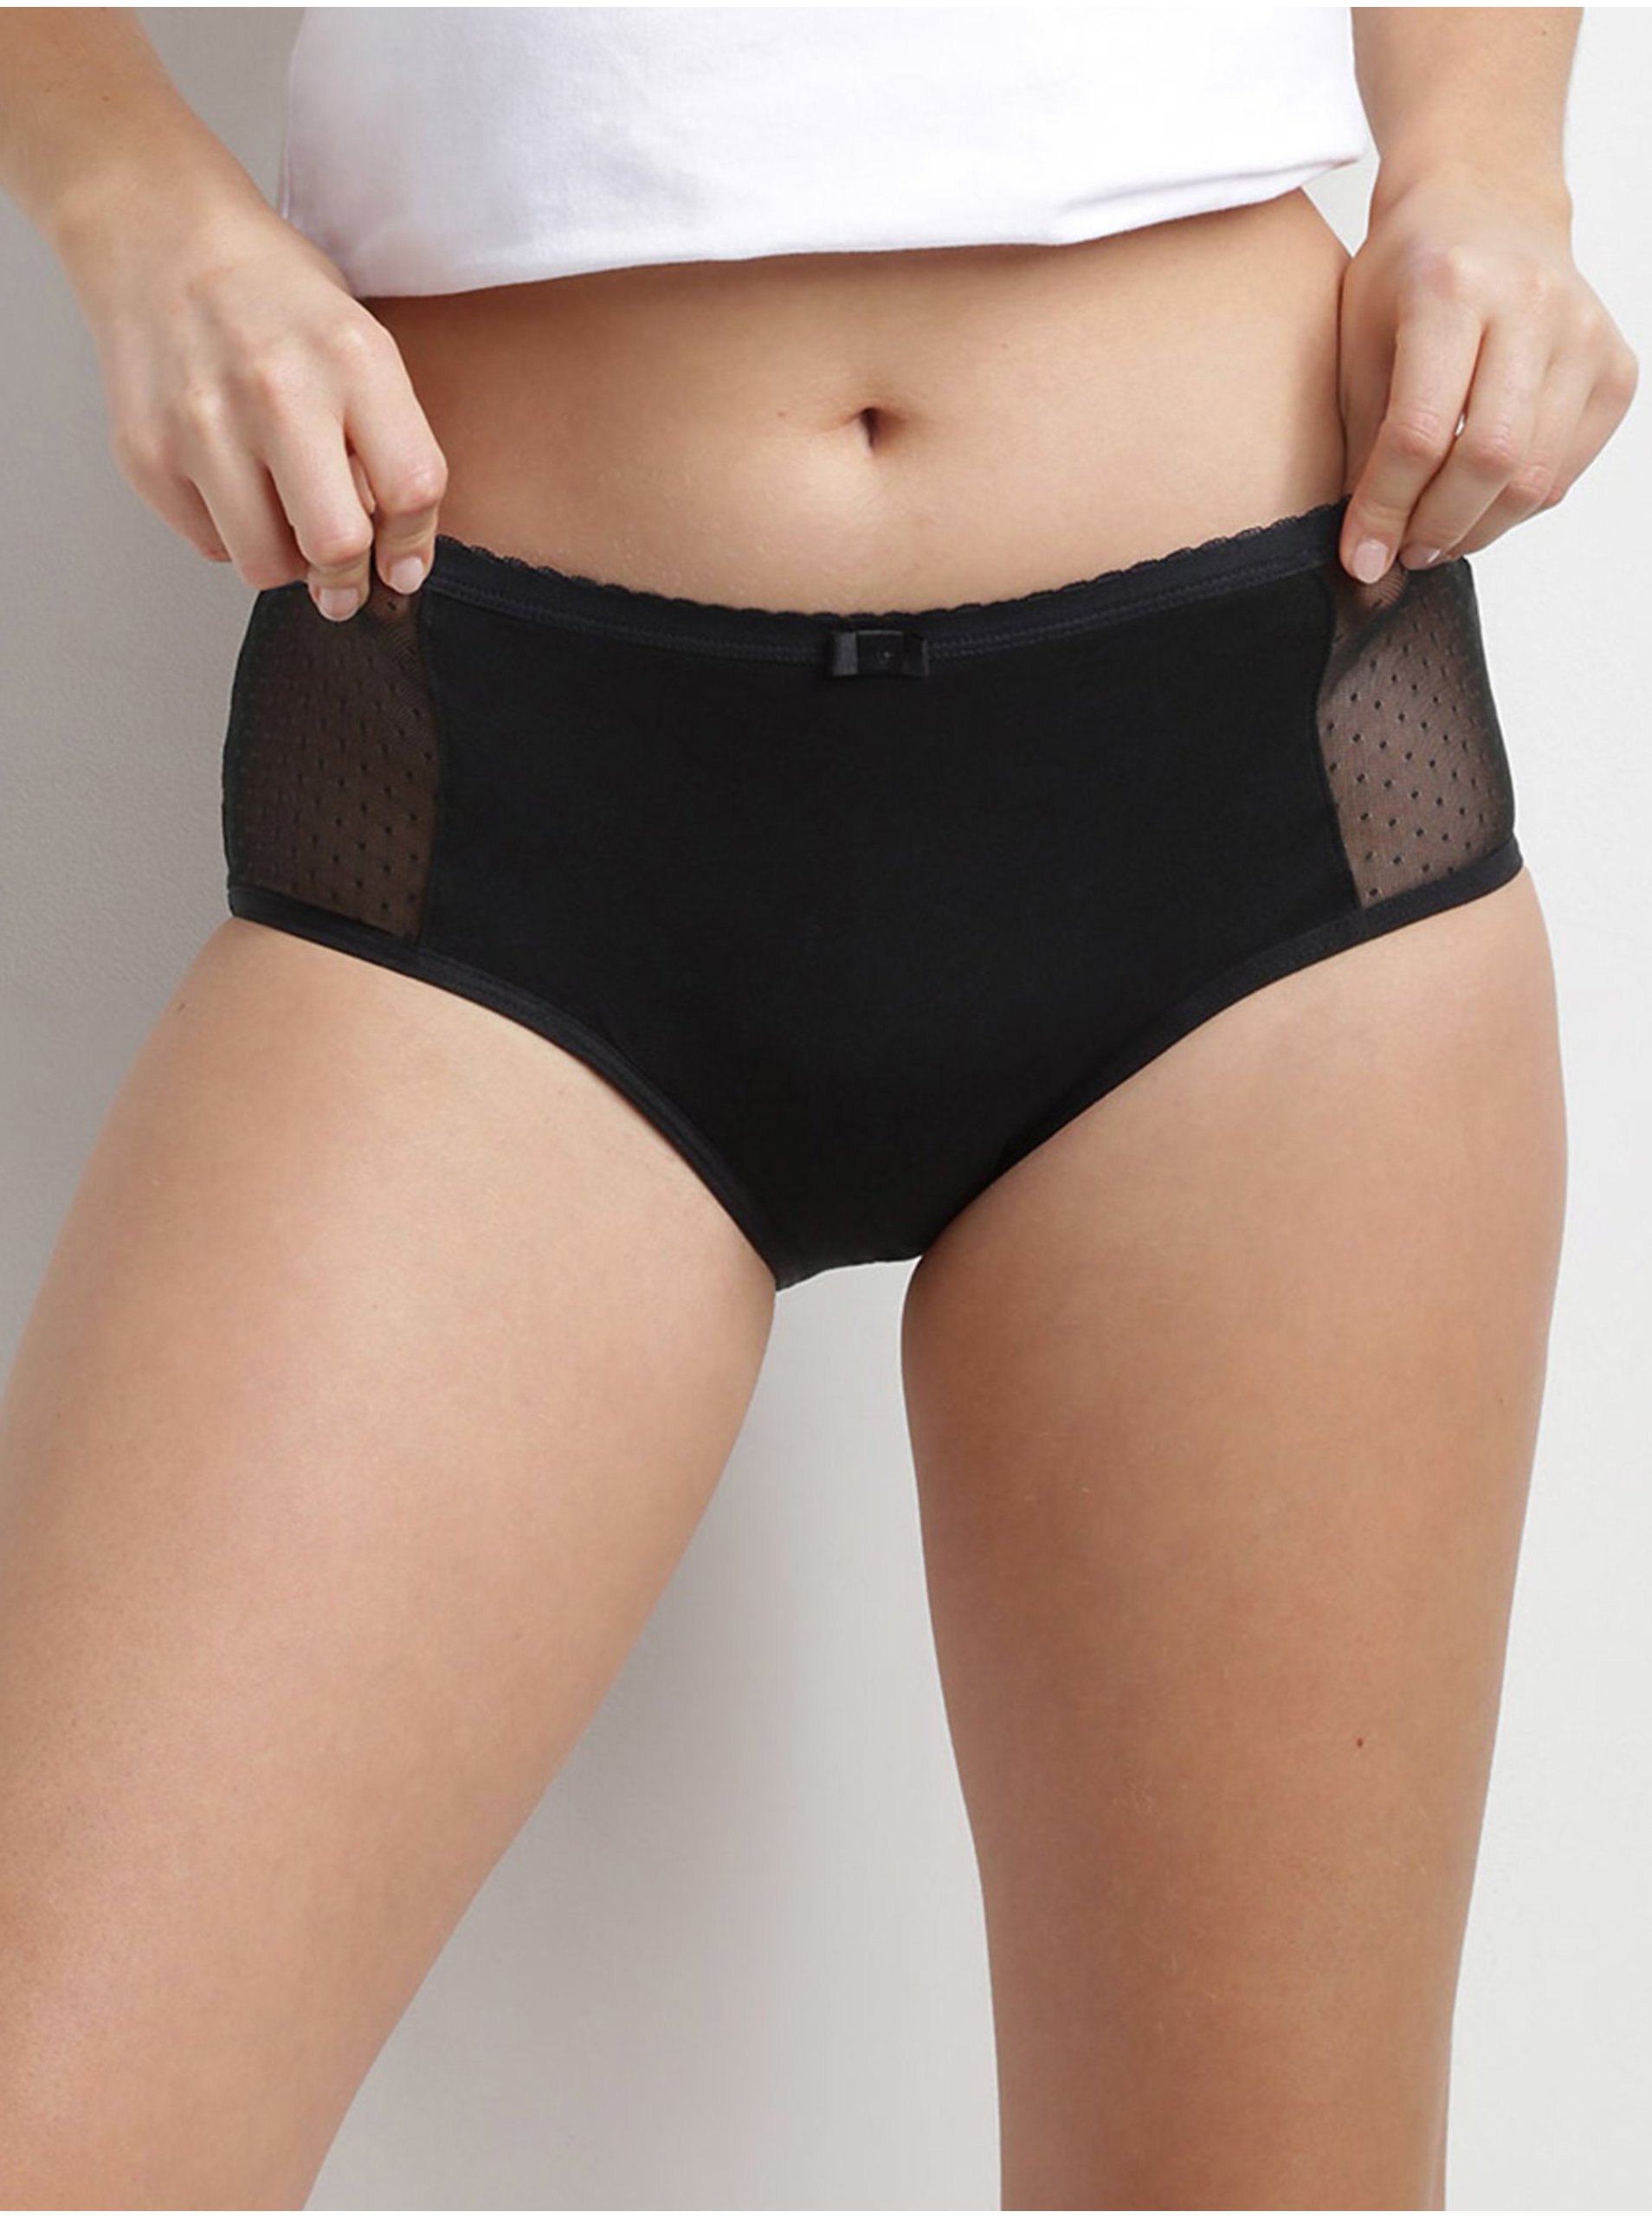 E-shop Černé menstruační kalhotky s krajkovým detailem Dim MENSTRUAL LACE BOXER